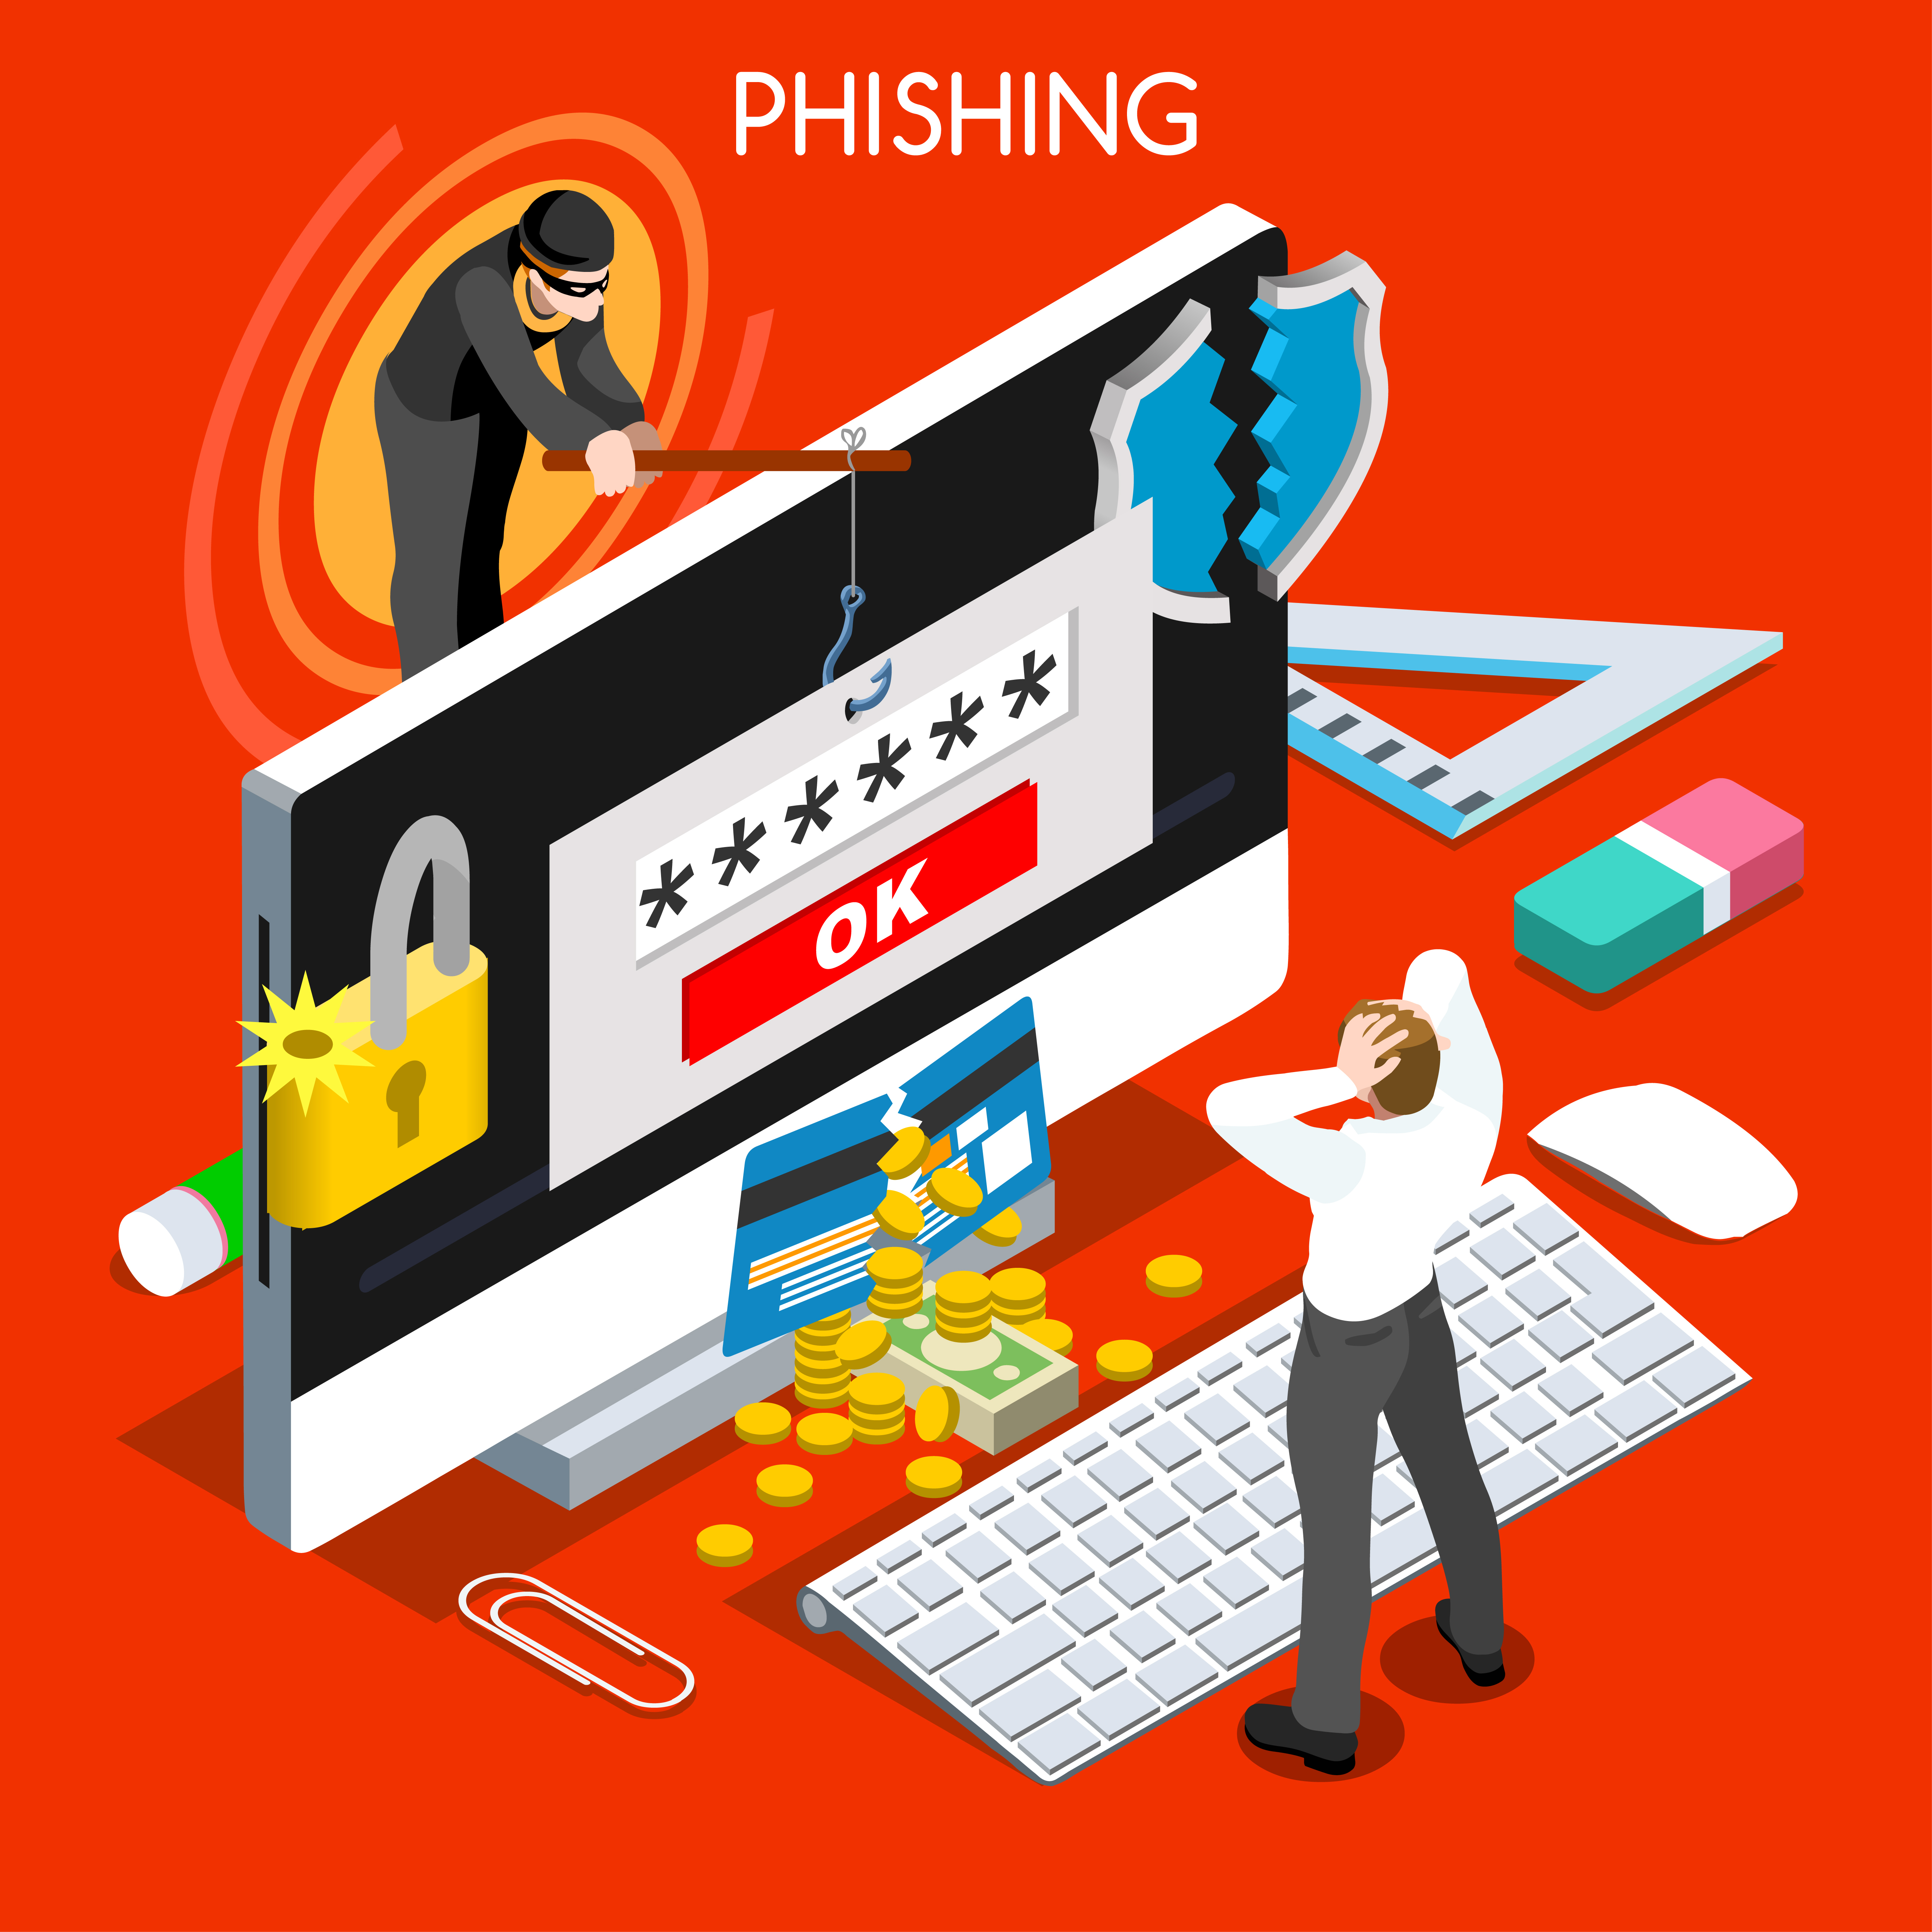 shutterstock-phishing